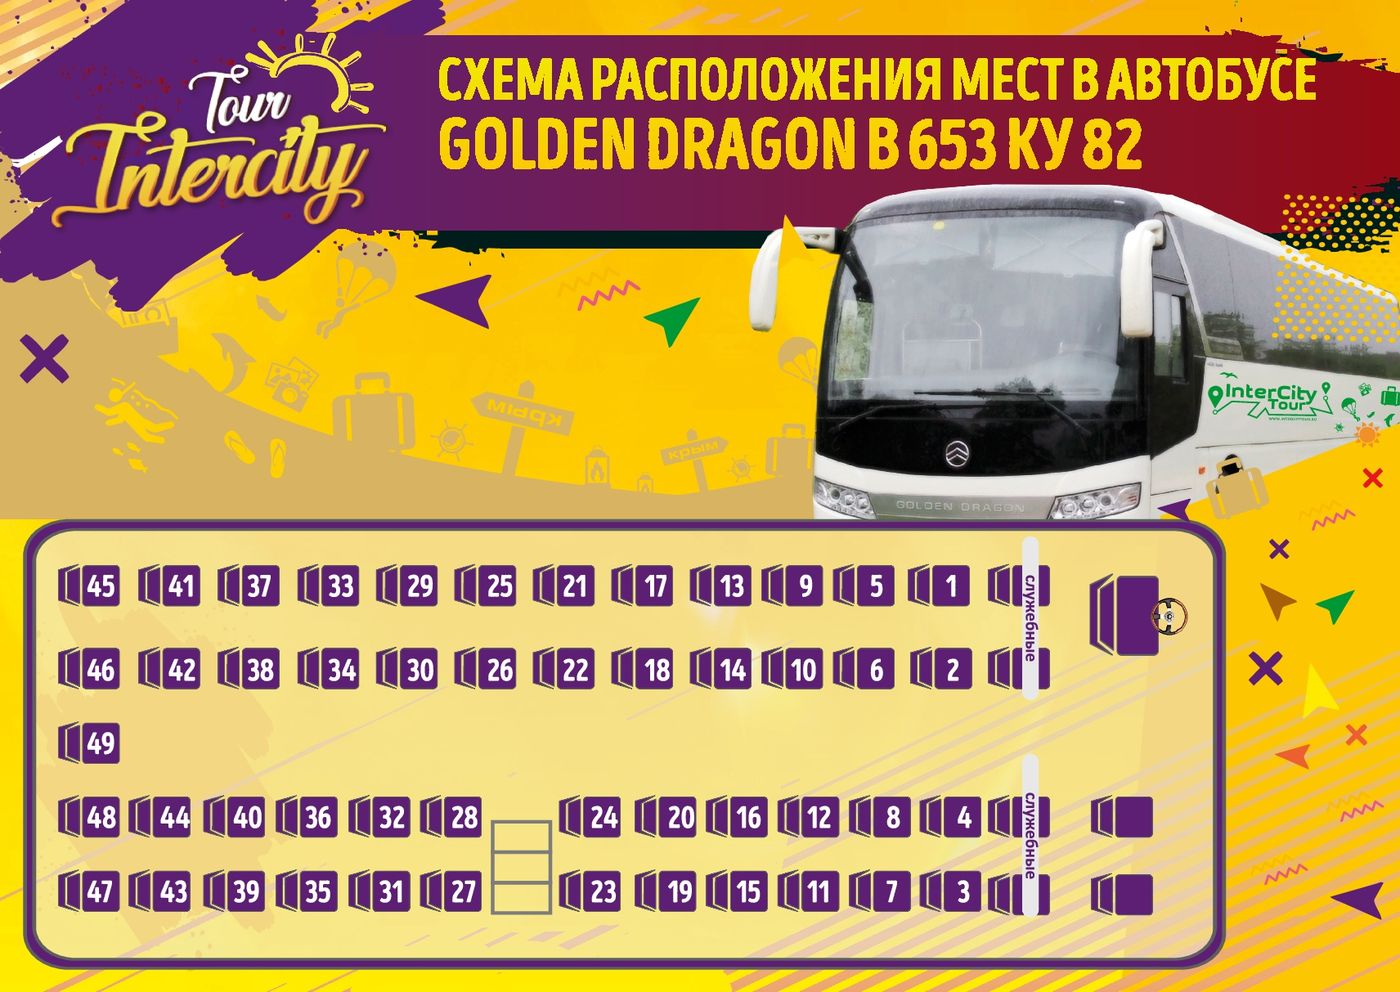 М автобус в час. Автобус Golden Dragon 39 мест. Расположение мест в автобусе. Места в автобусе схема. Расположение мест в междугороднем автобусе схема.